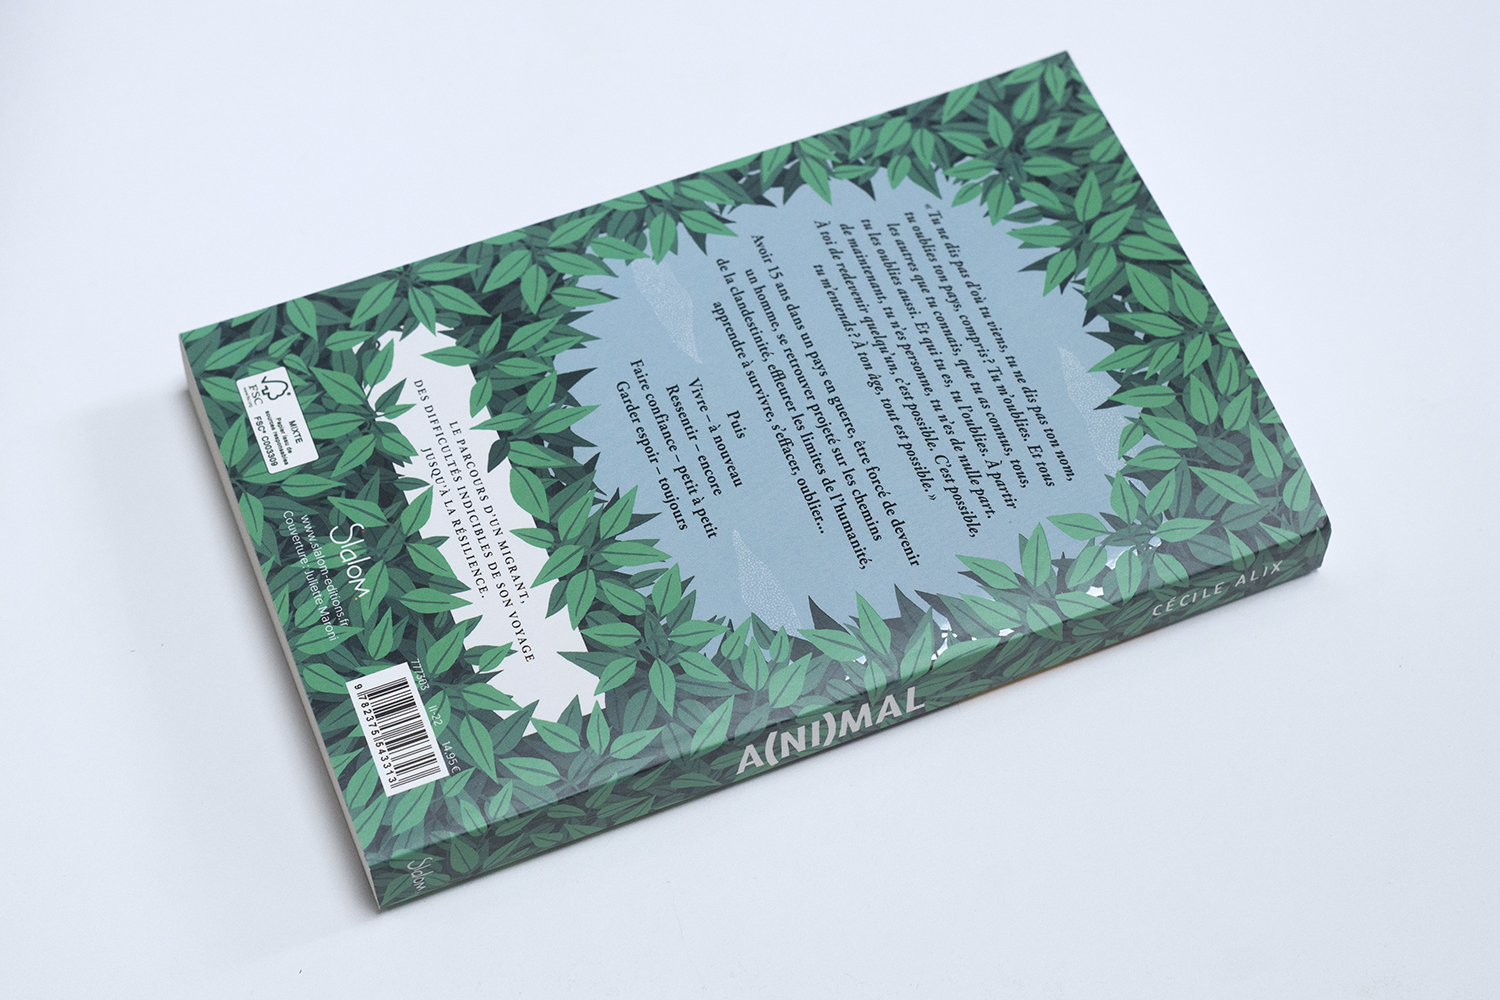 Quatrième de couverture, illustration et conception graphique par Juliette Maroni pour la couverture du roman ado A(ni)mal écrit par Cécile Alix aux éditions Slalom.